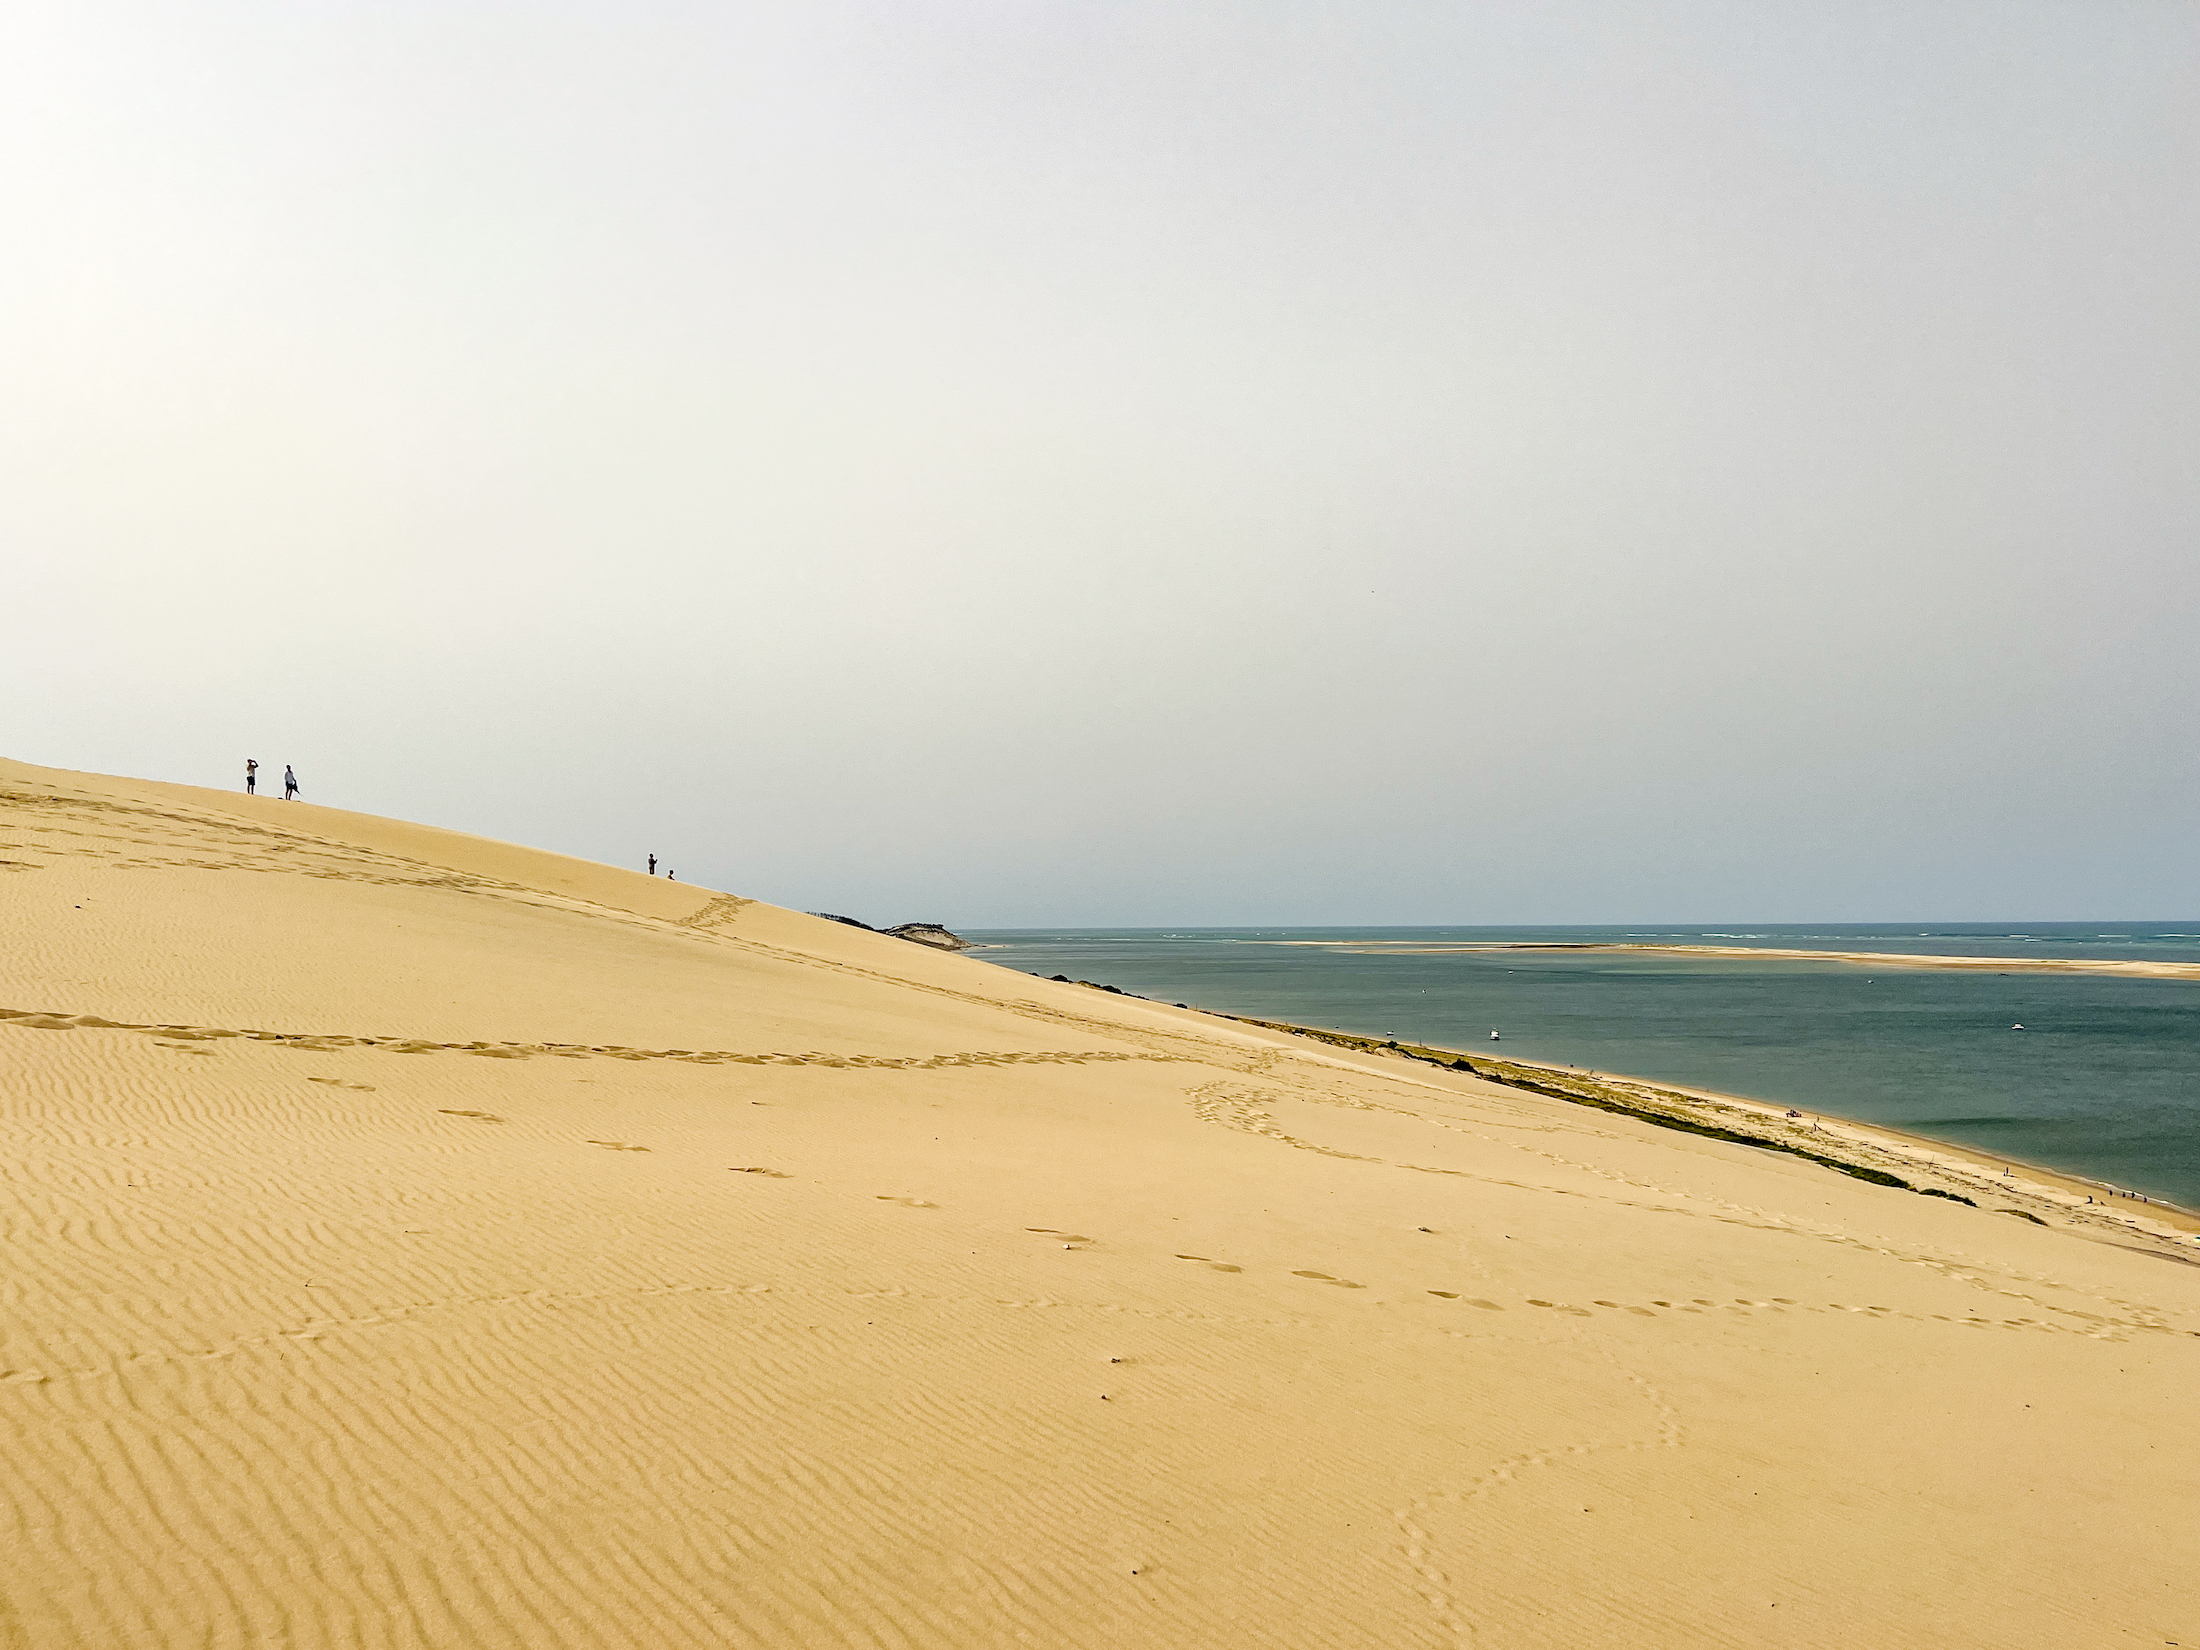 De hoogste zandduin van Europa - met een prachtige strand